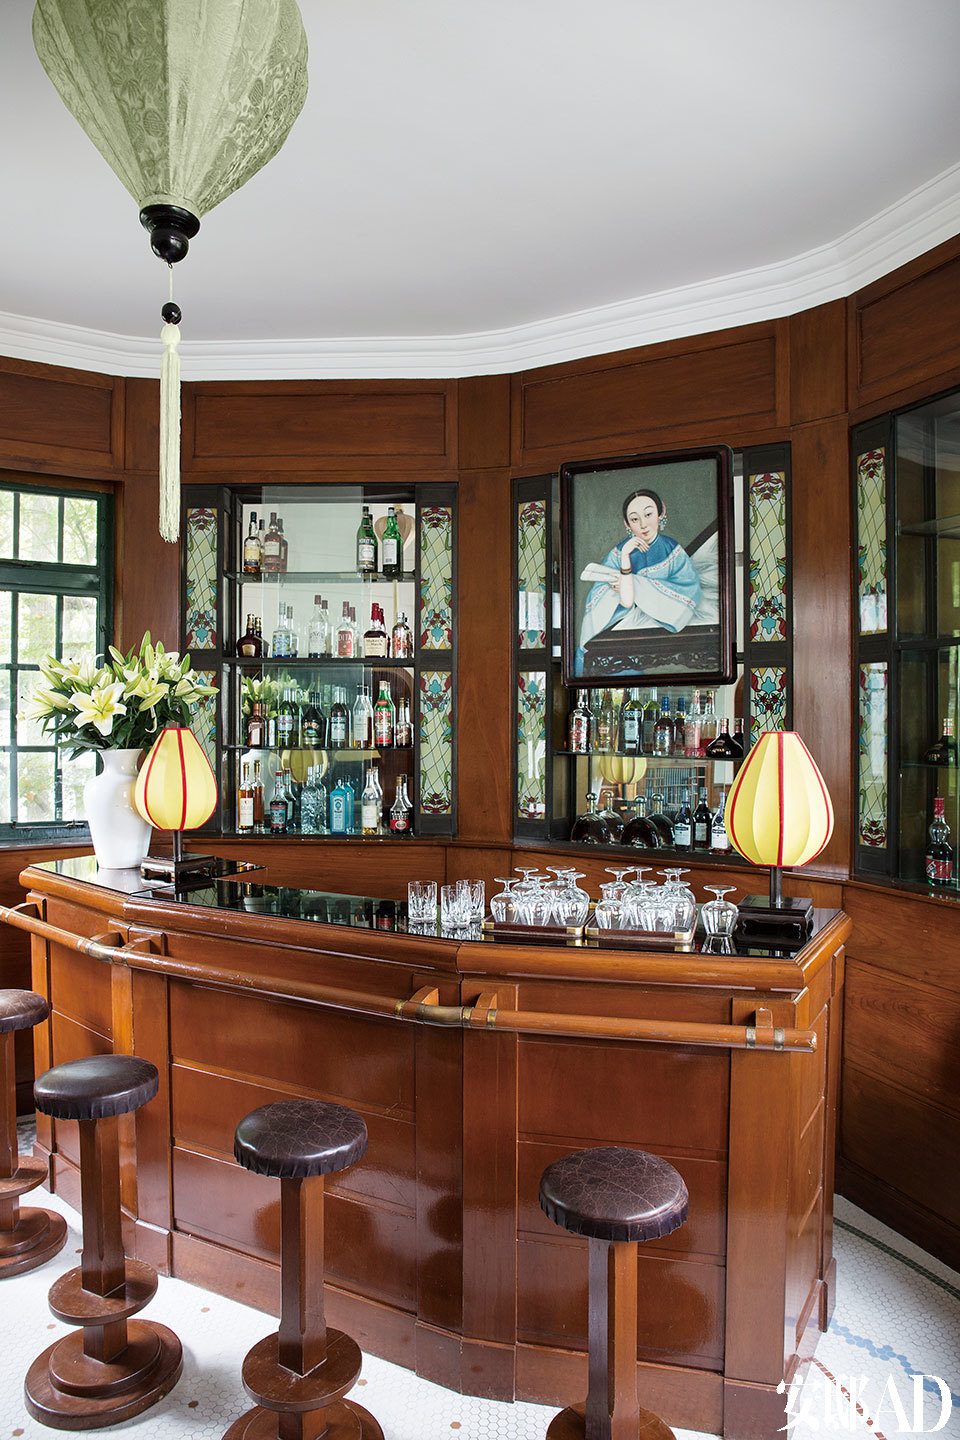 上世紀20年代風格木嵌板吧臺，4把酒吧椅非常適合休憩。酒 吧后面掛著一幅晚清女人畫像。